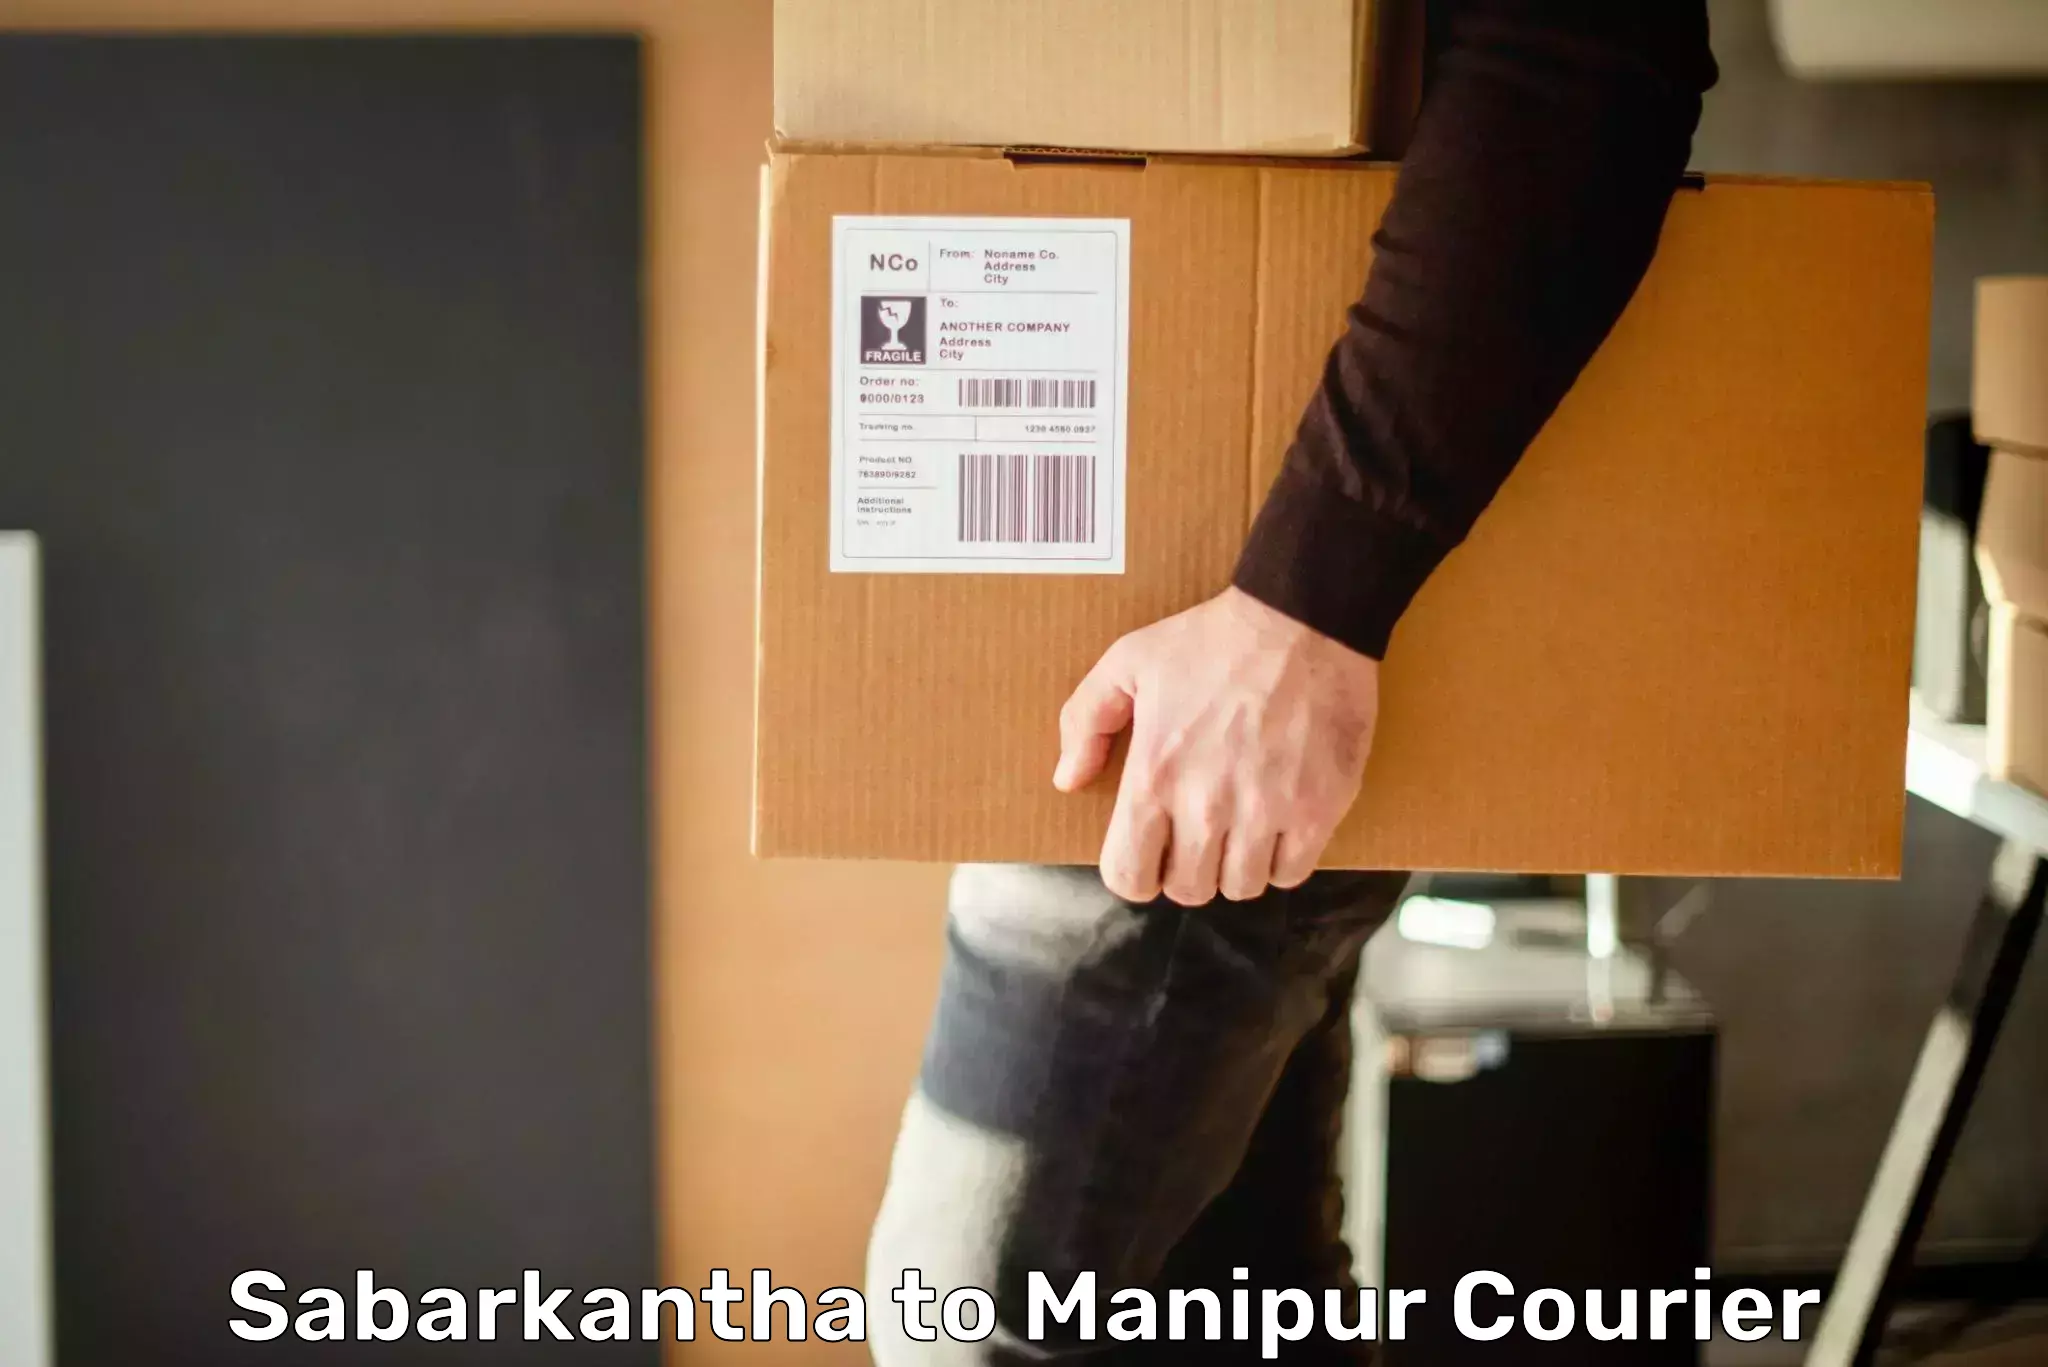 Bulk courier orders Sabarkantha to Chandel